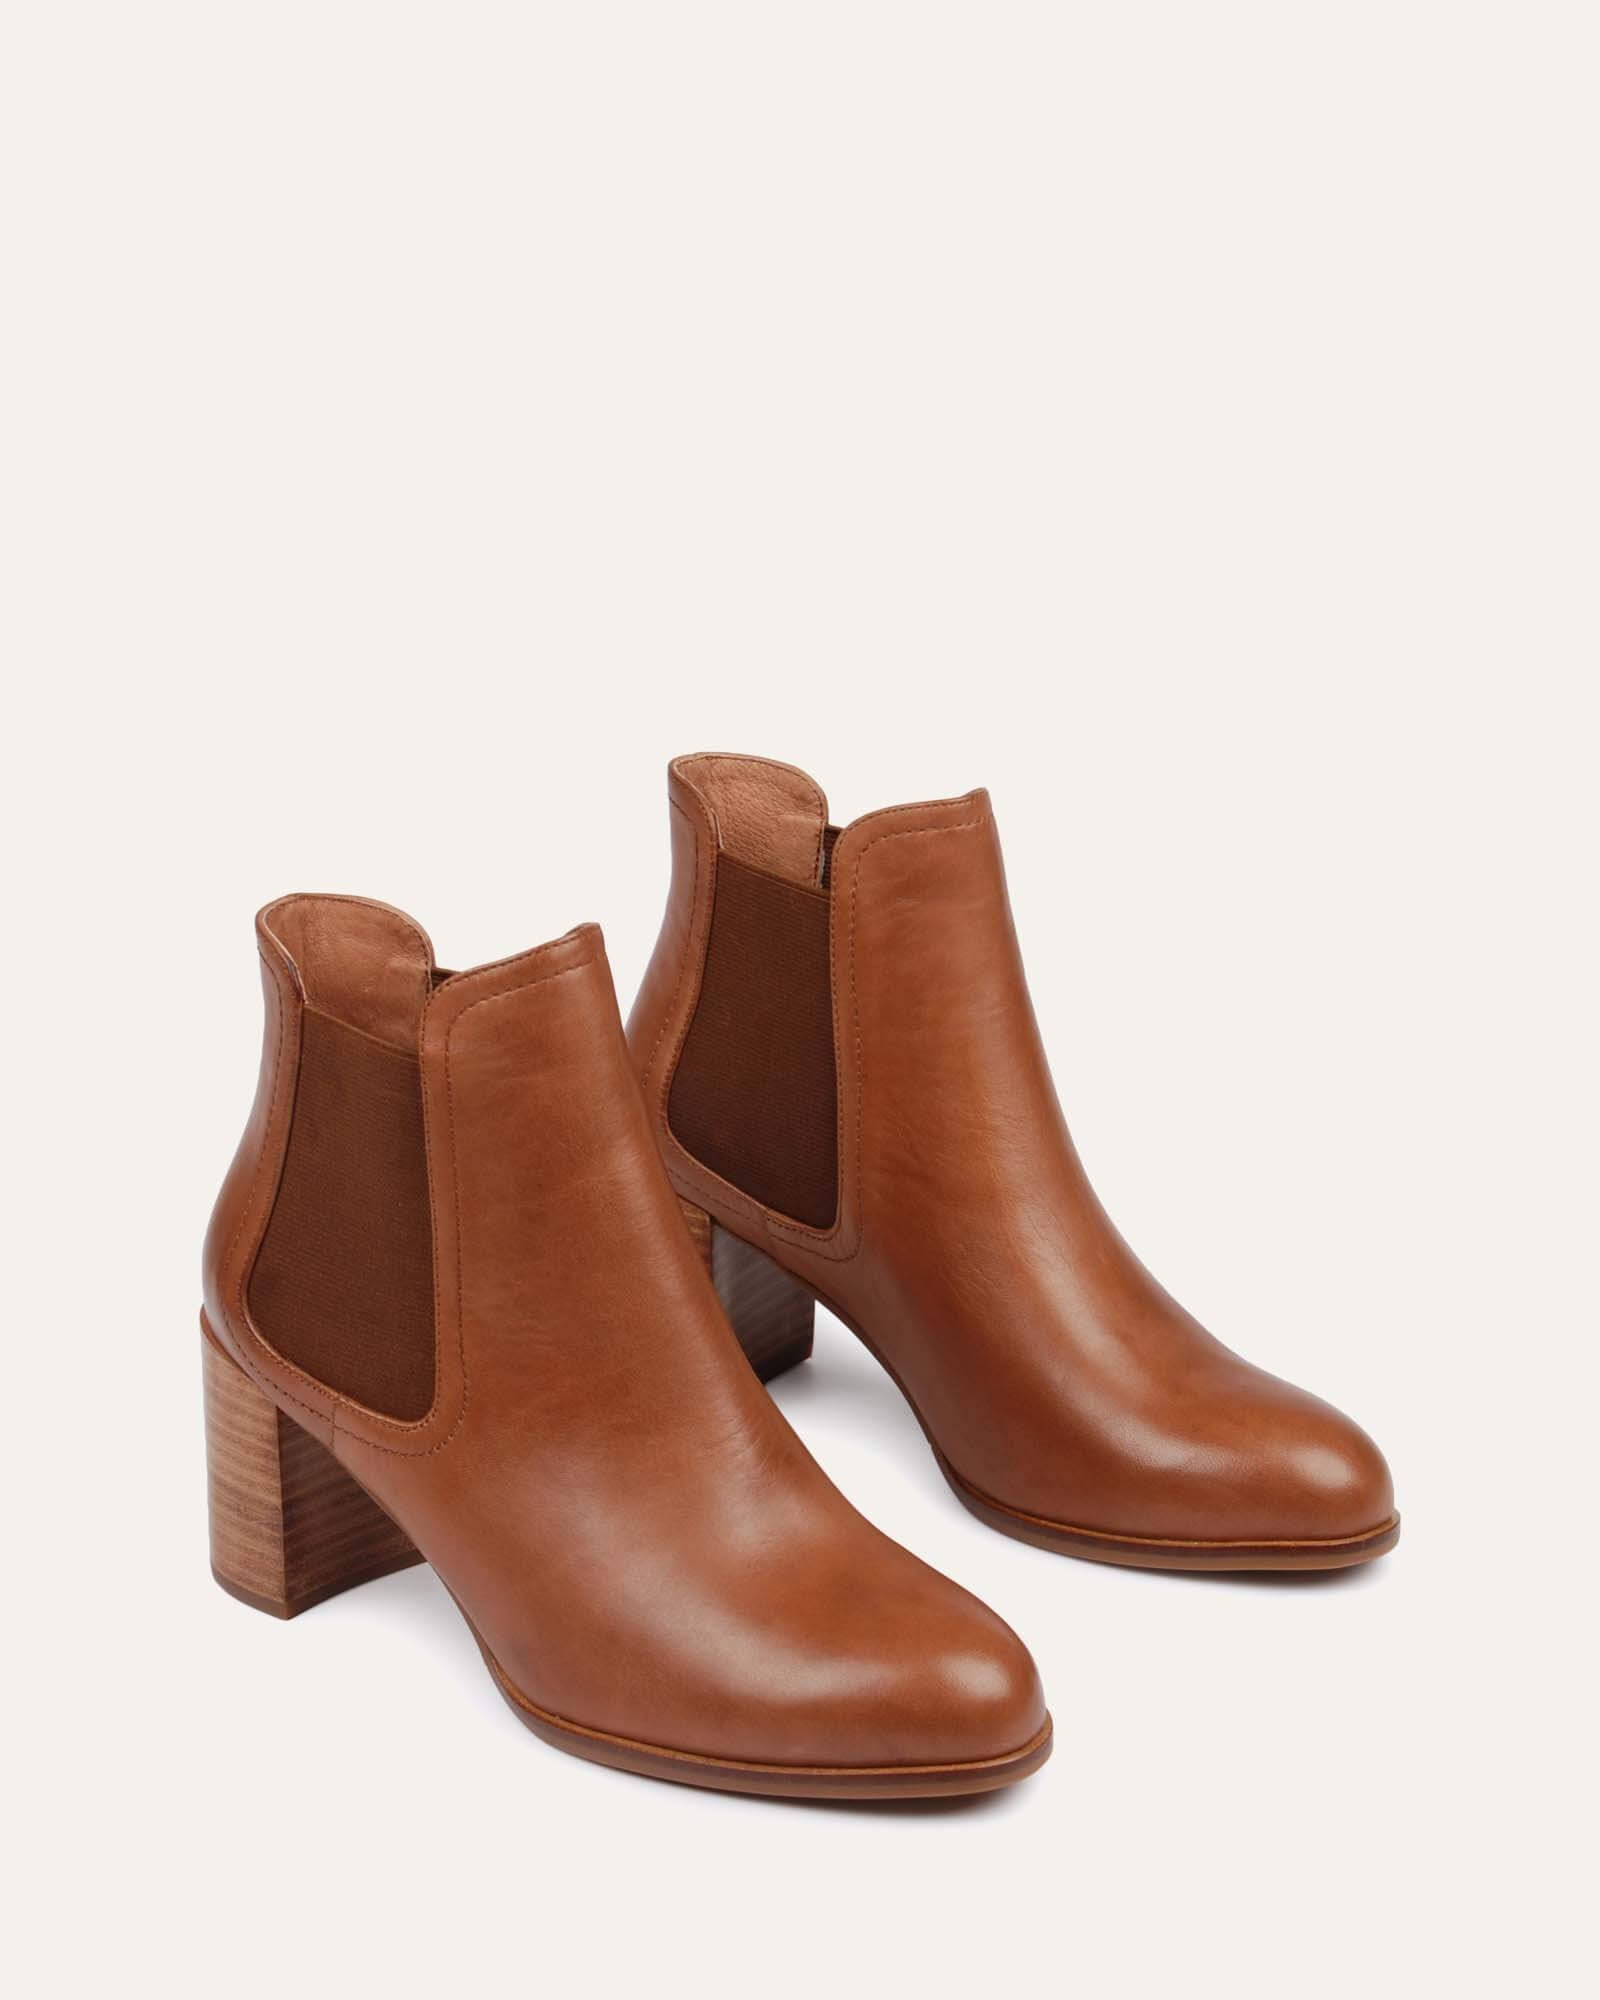 Deia Bootie | Camel Python Leather Ankle Boots | Elizée Shoes